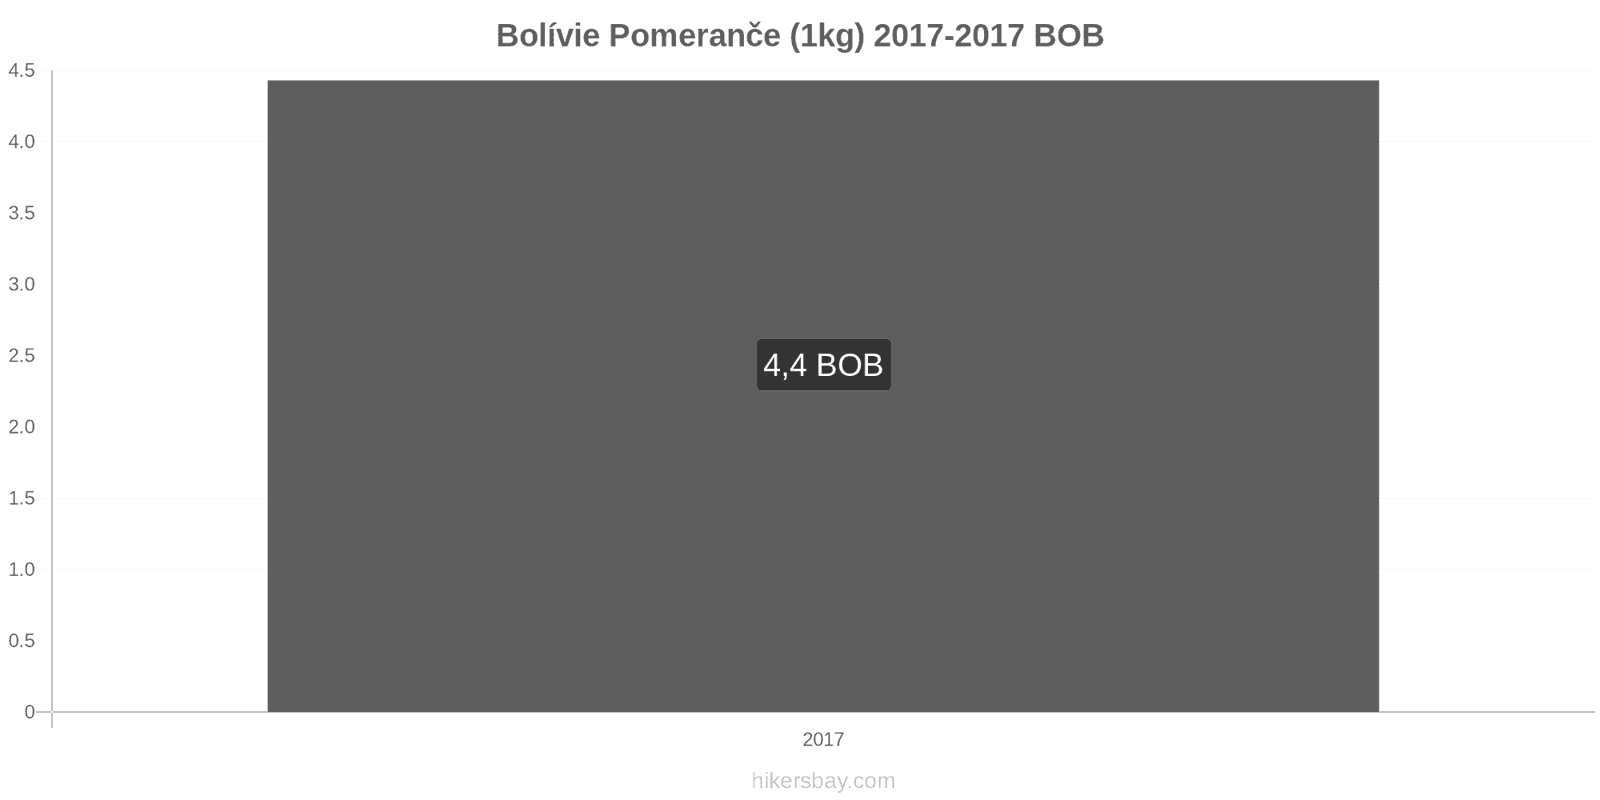 Bolívie změny cen Pomeranče (1kg) hikersbay.com